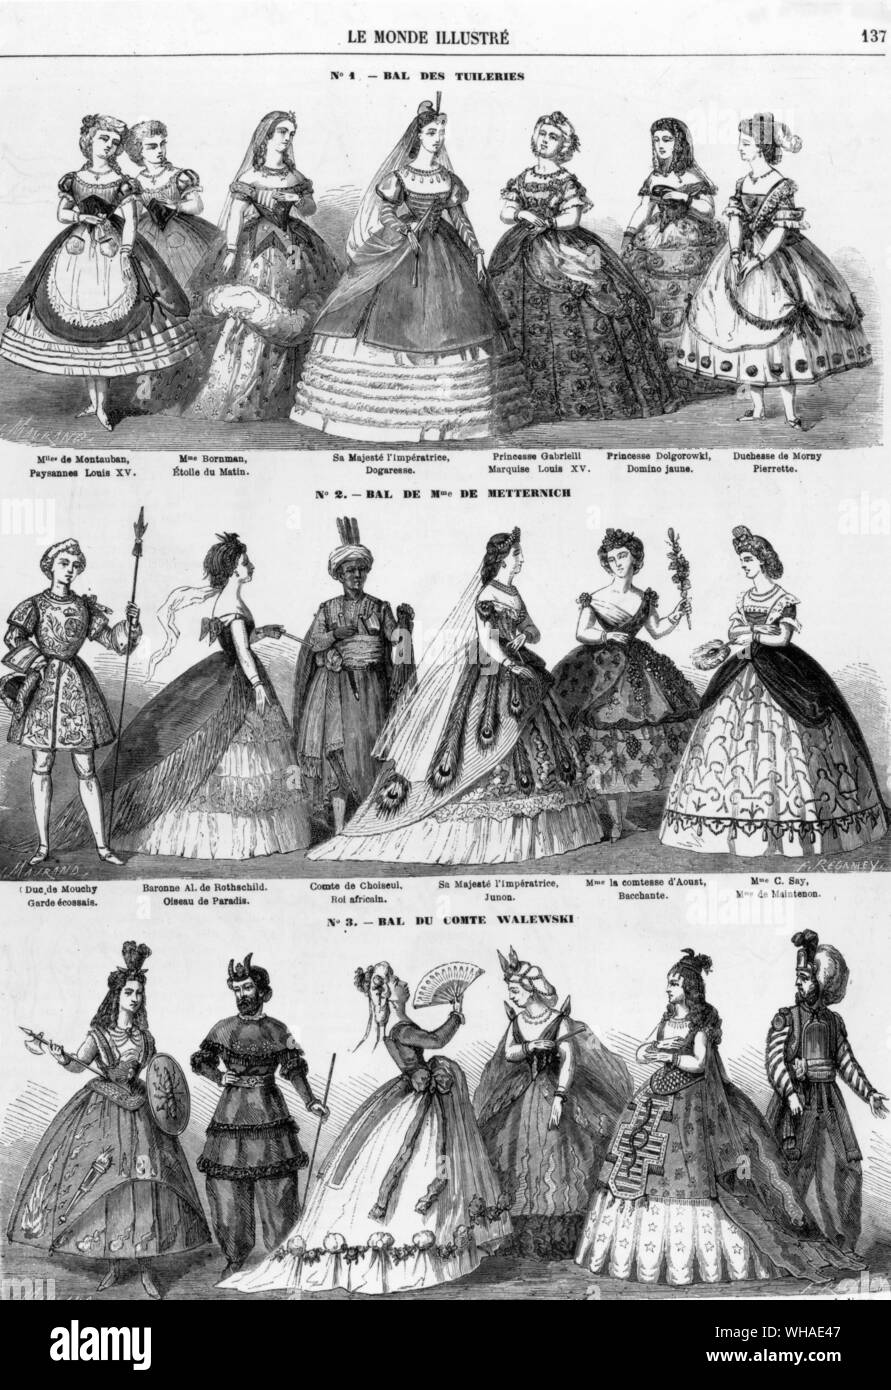 Von Le Monde Illustre am 28. Februar 1863. Kostüme von der Kaiserin Eugenie und andere getragen zu Parteien in Paris im Jahr 1863 Stockfoto